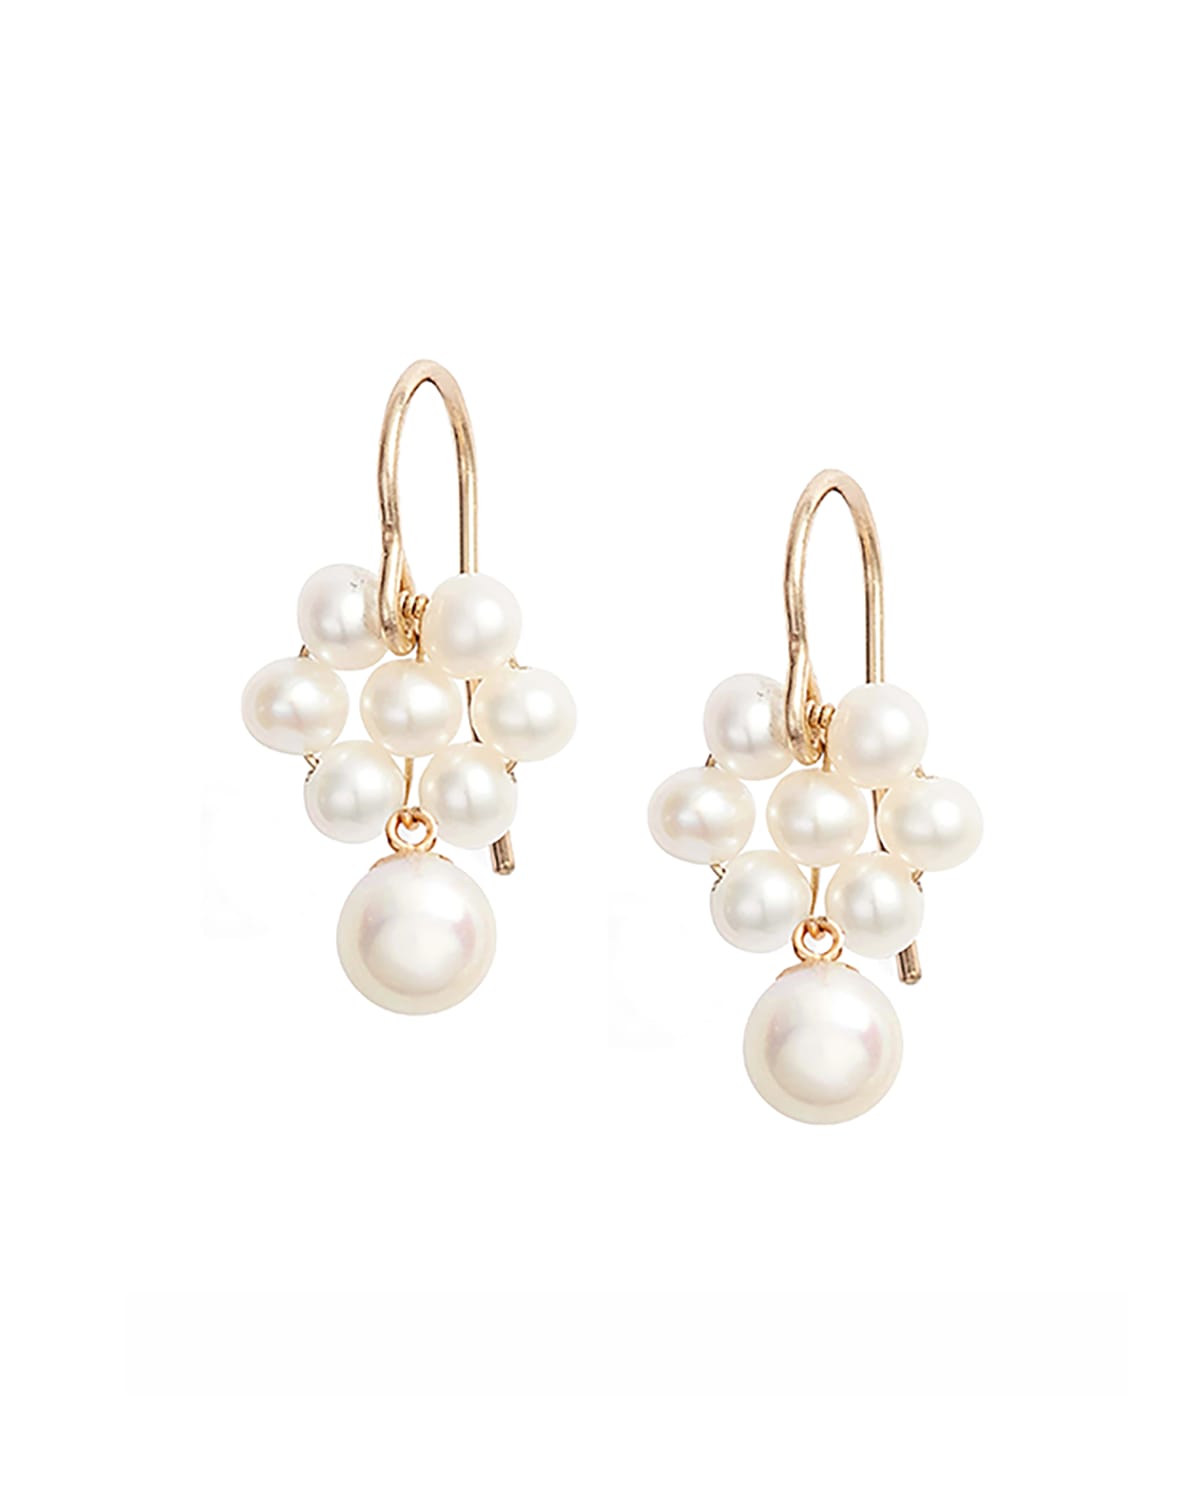 Poppy Finch 14k Gold Pearl Cluster Drop Earrings